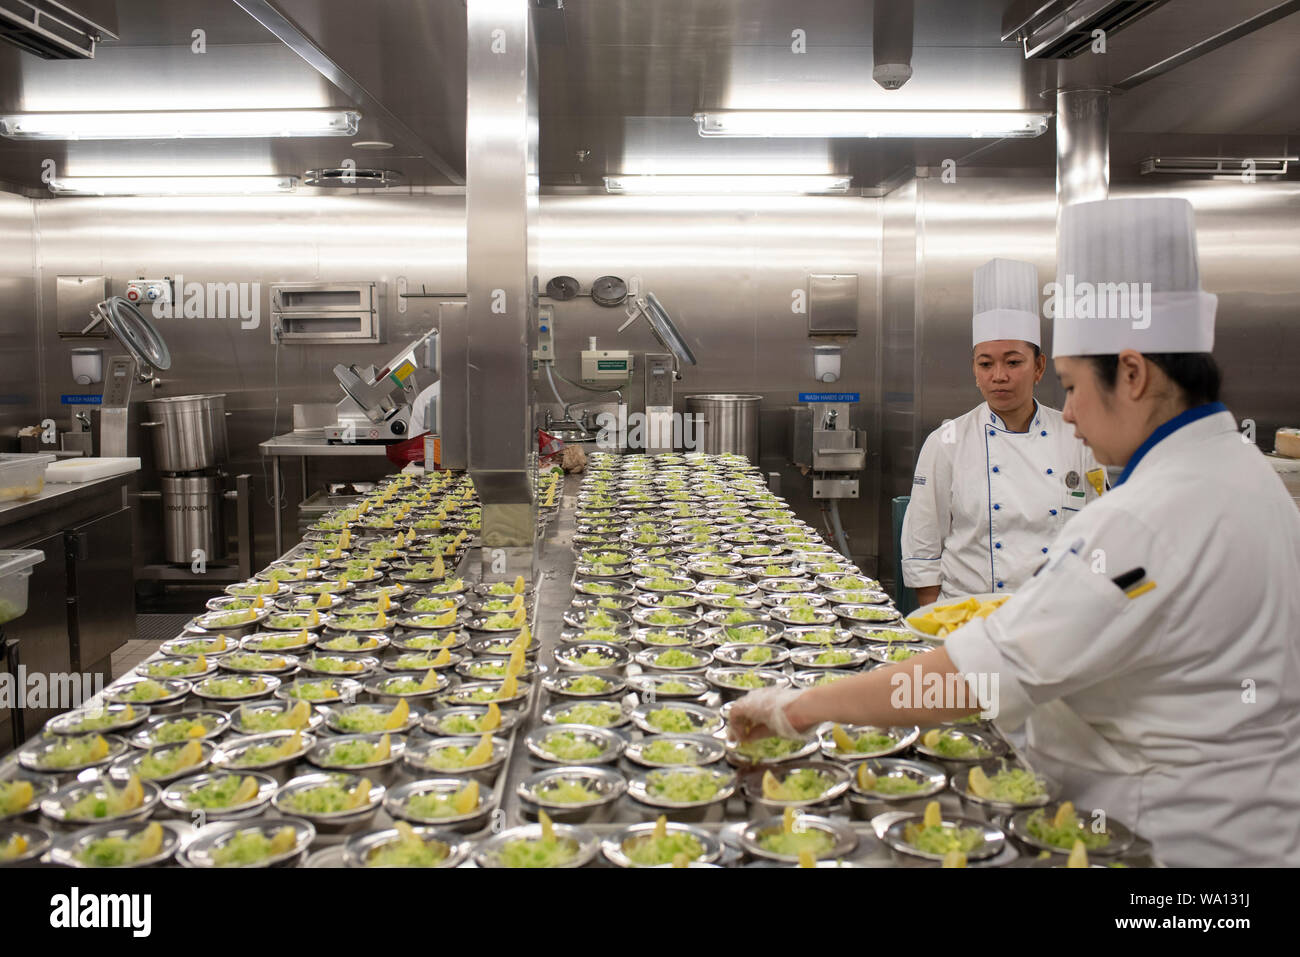 Près de 1000 personnes en cuisine travaillent à un rythme effréné. Les entrées, les plats et les desserts sont préparés dans des endroits différents. Stock Photo